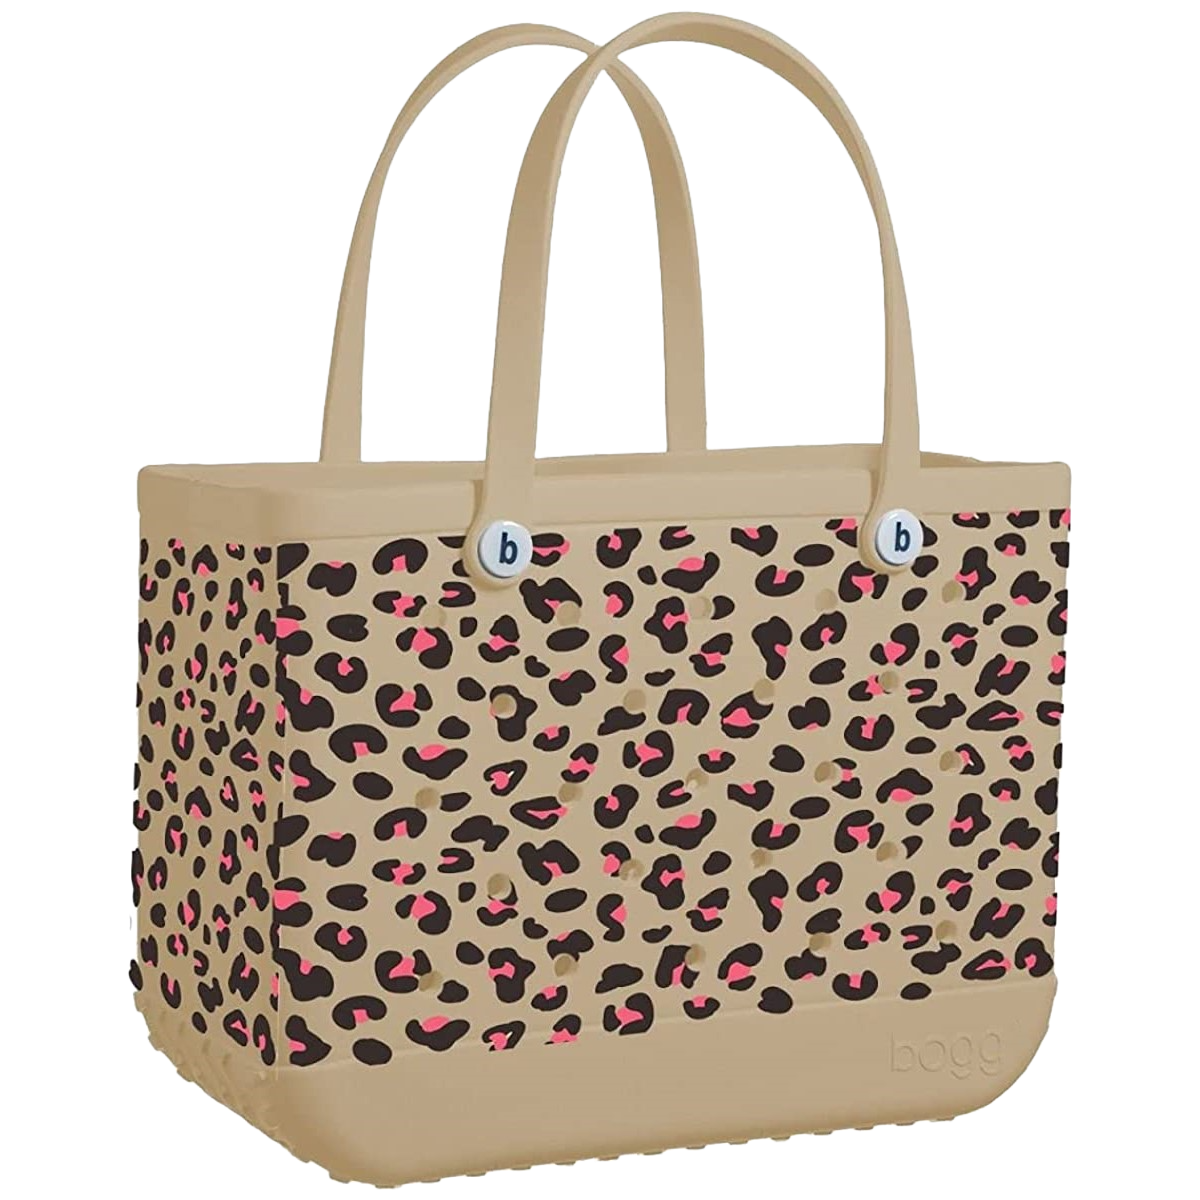 Bogg Bag Wild Child PINK Leopard Original Tote Bag 26OB-LEOP